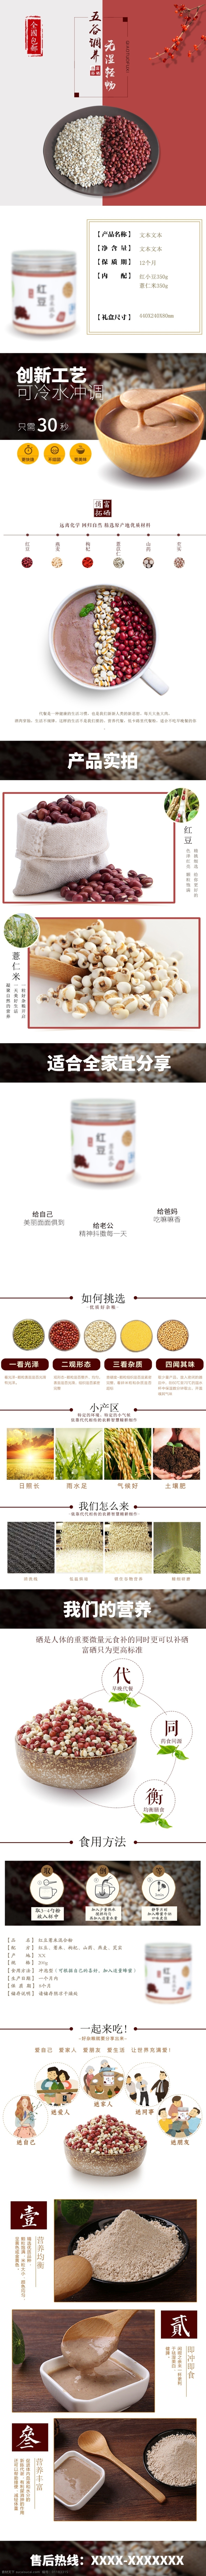 电商 淘宝 五谷杂粮 详情 页 详情页 健康 养生 杂粮 红豆 薏米 营养